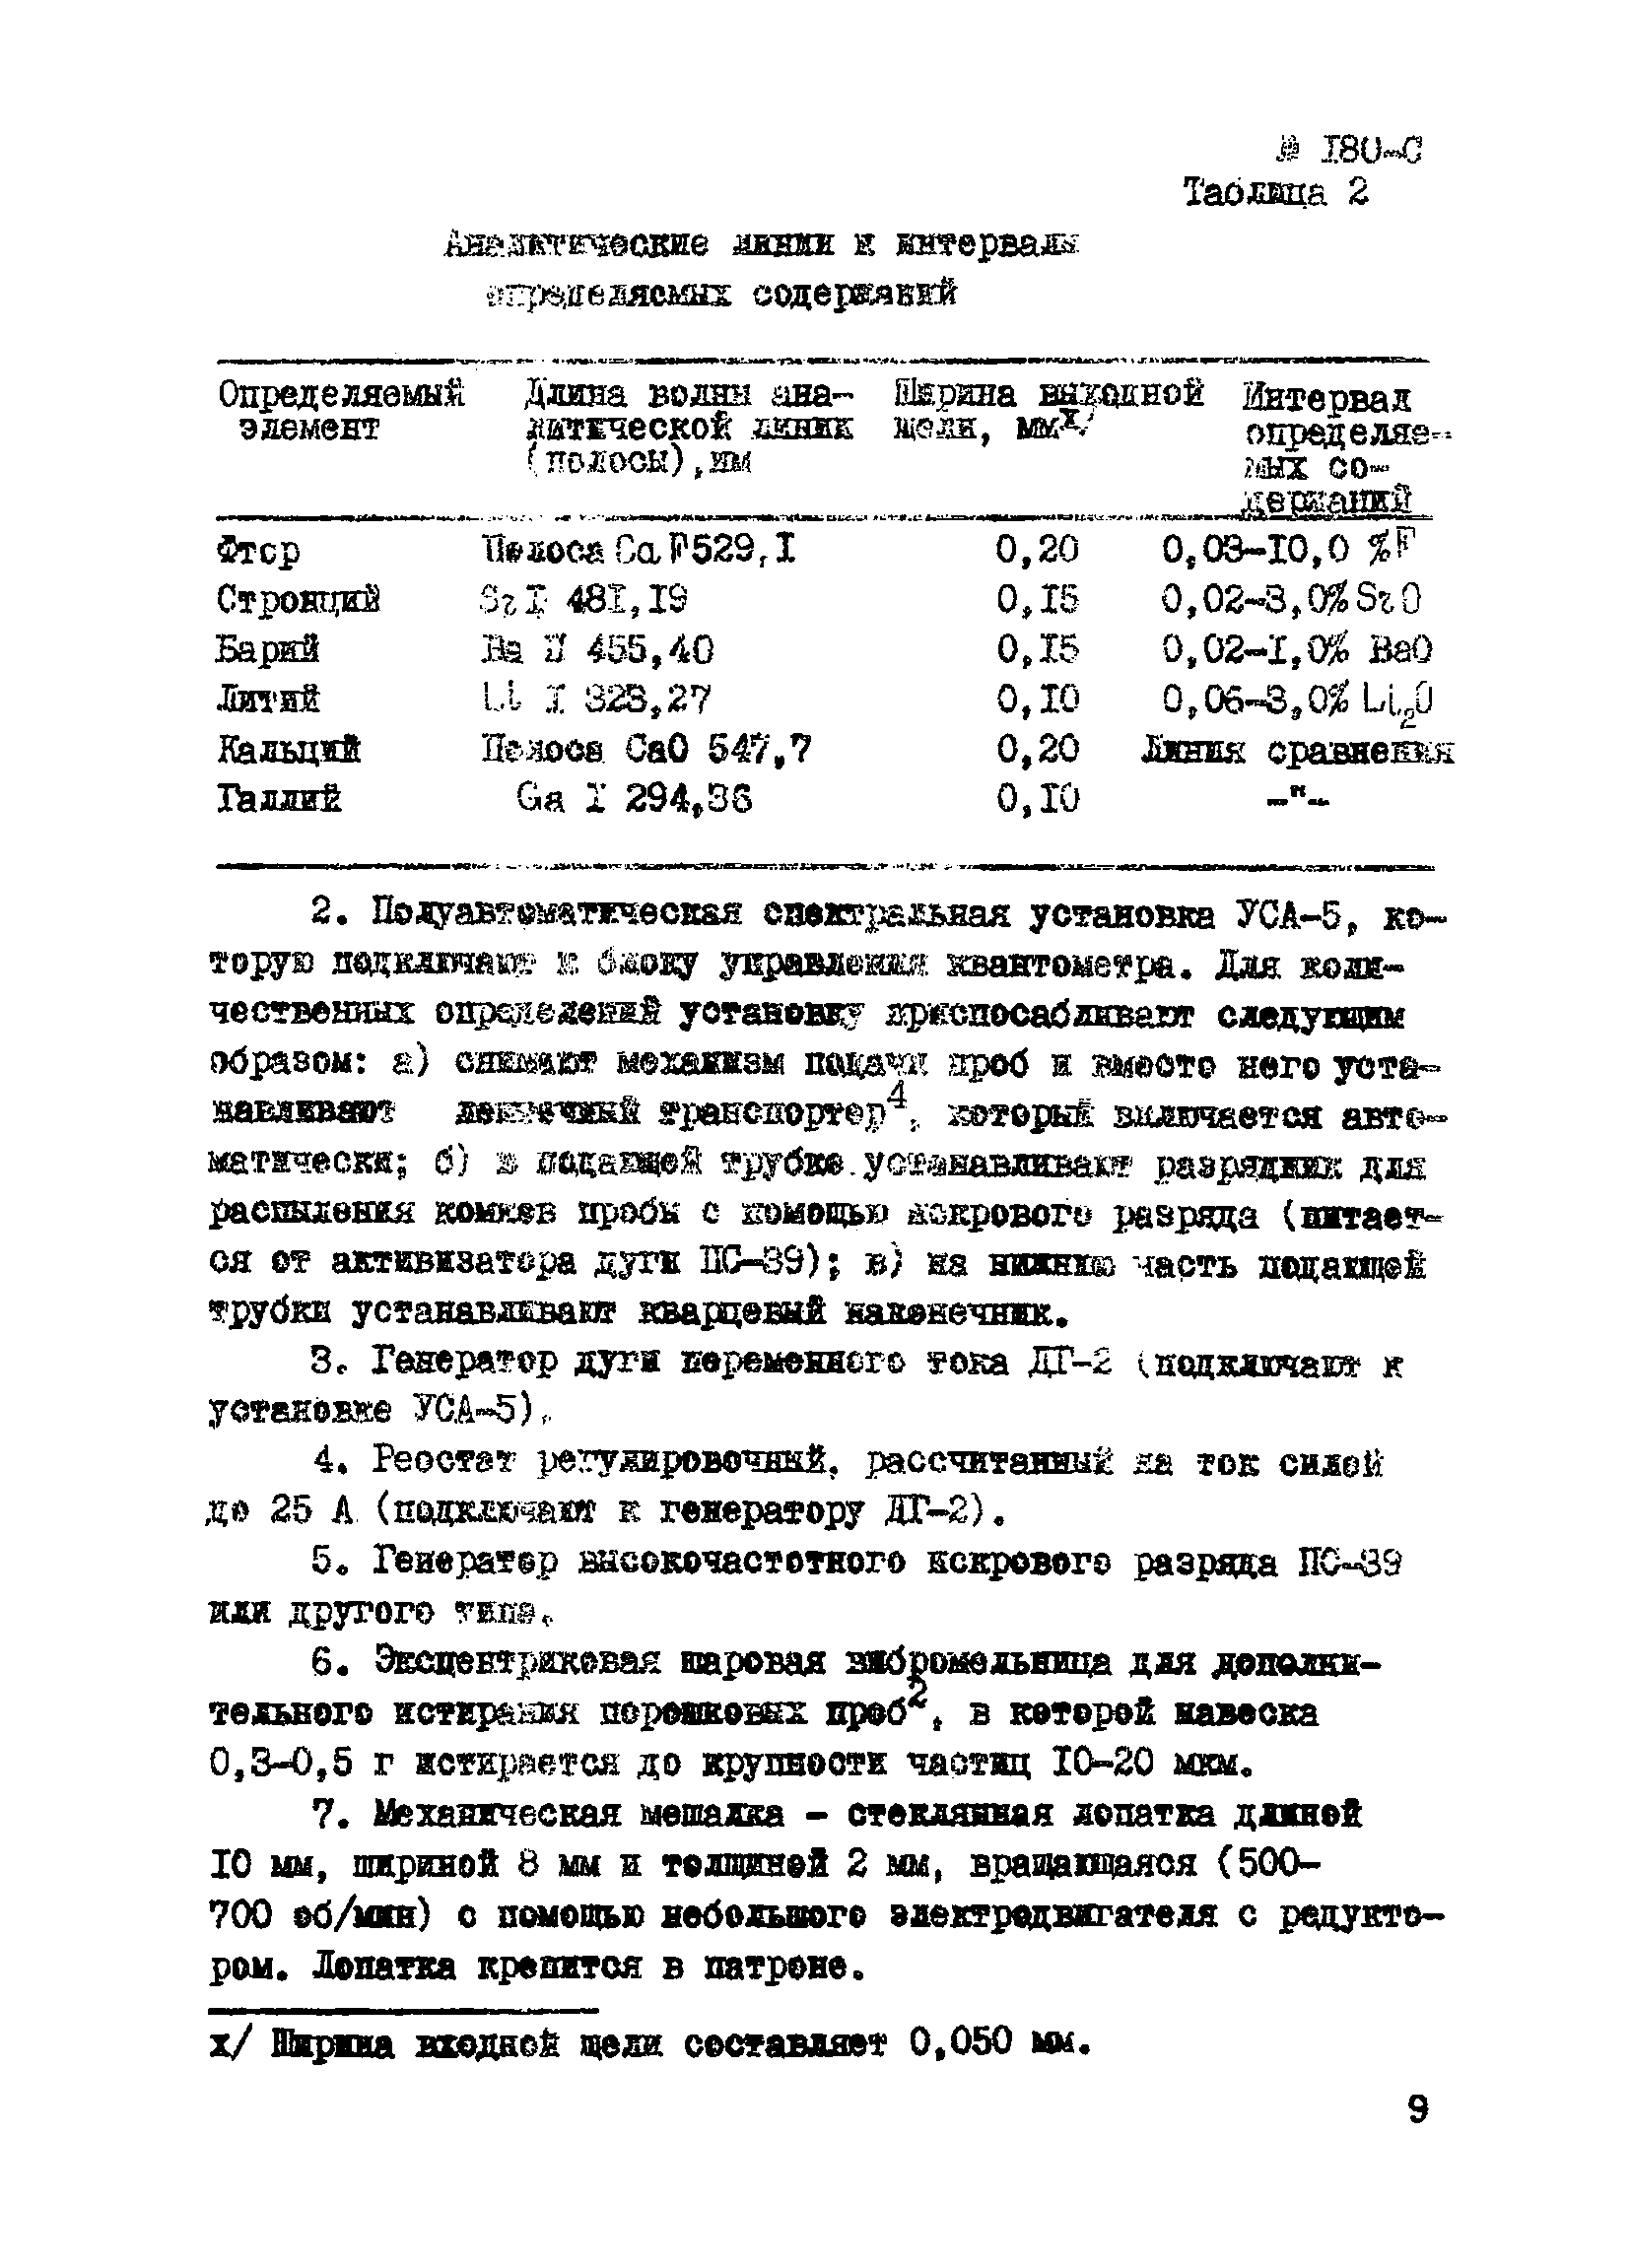 Инструкция НСАМ 180-С